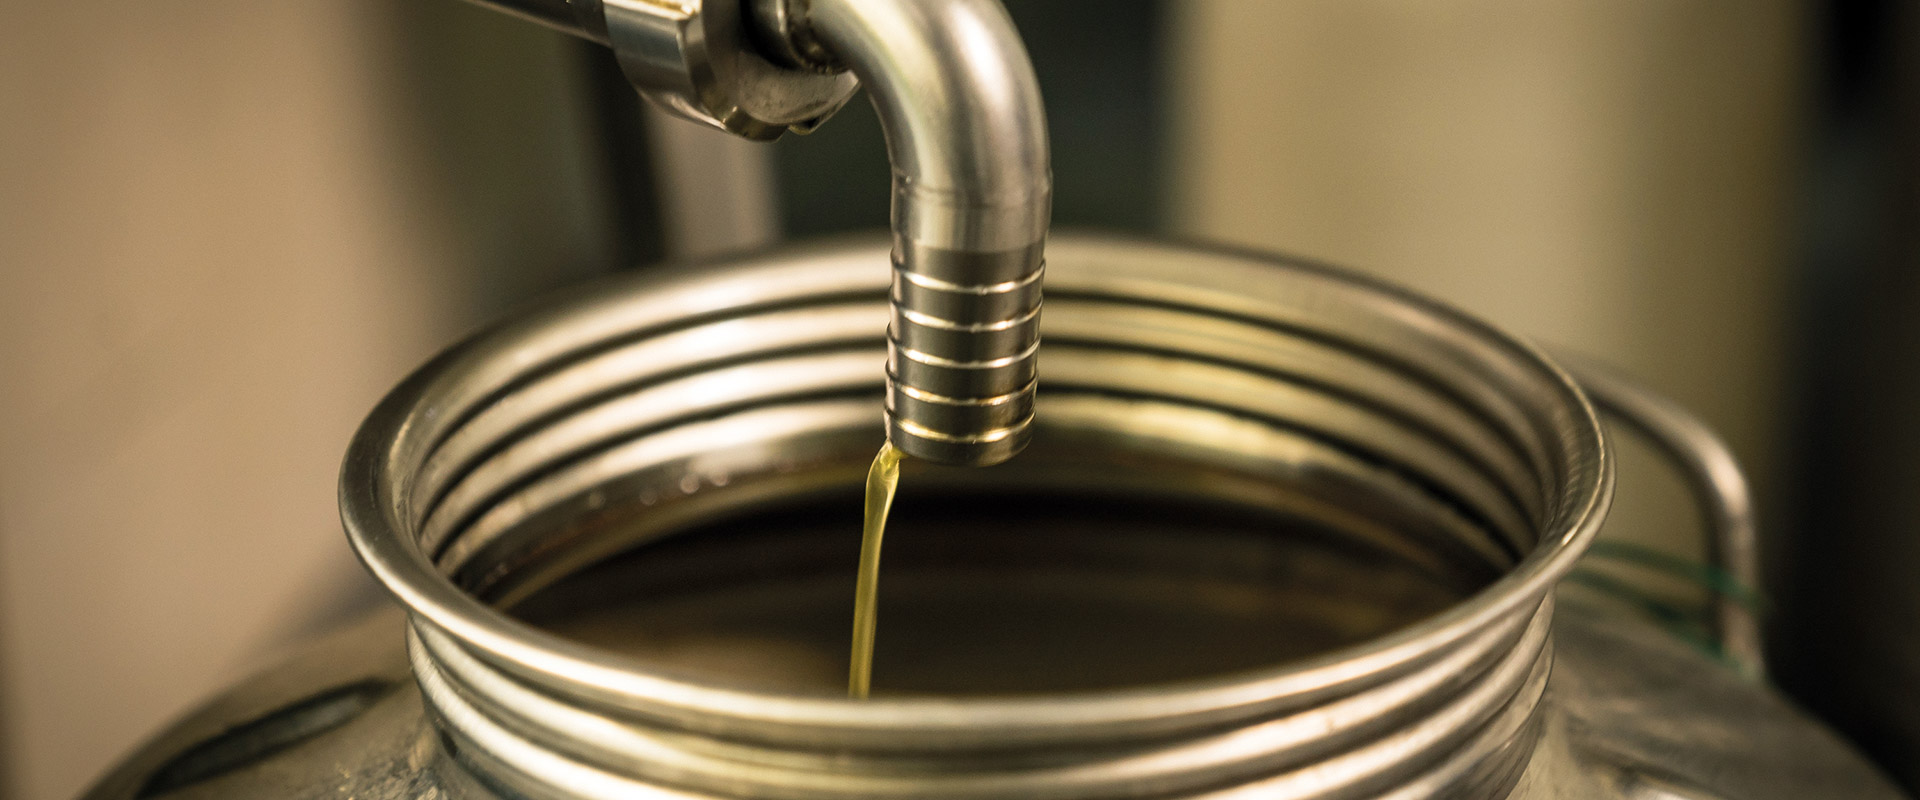 Storing olive oil – Fratelli Carli